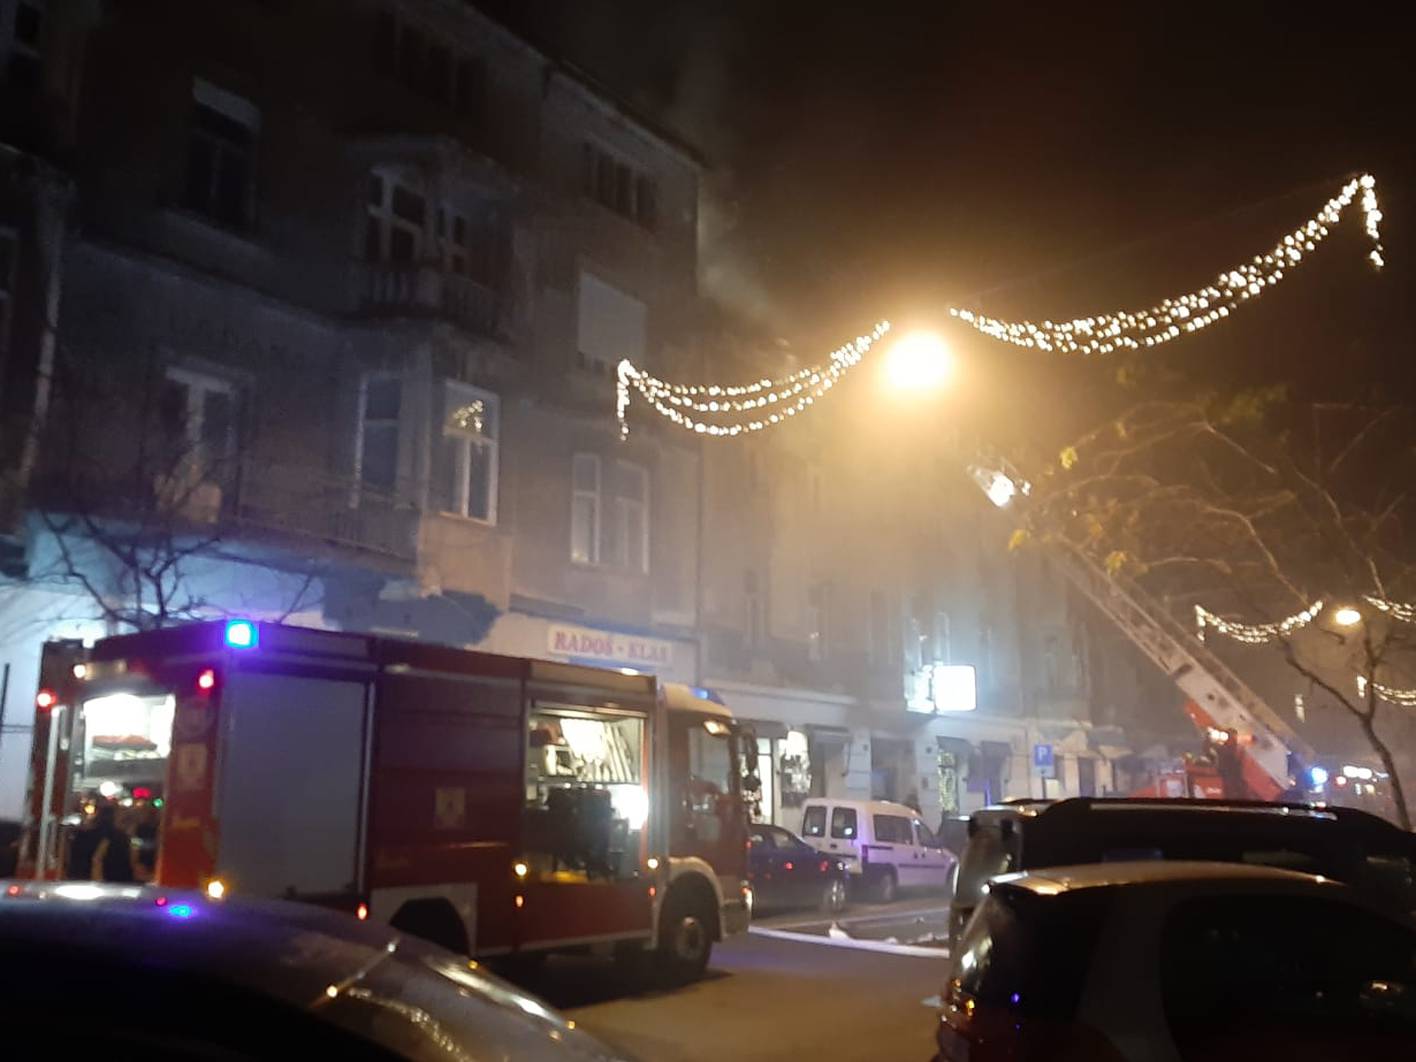 Vatrogasci ugasili požar: Nitko nije ozlijeđen, uzrok je grijalica